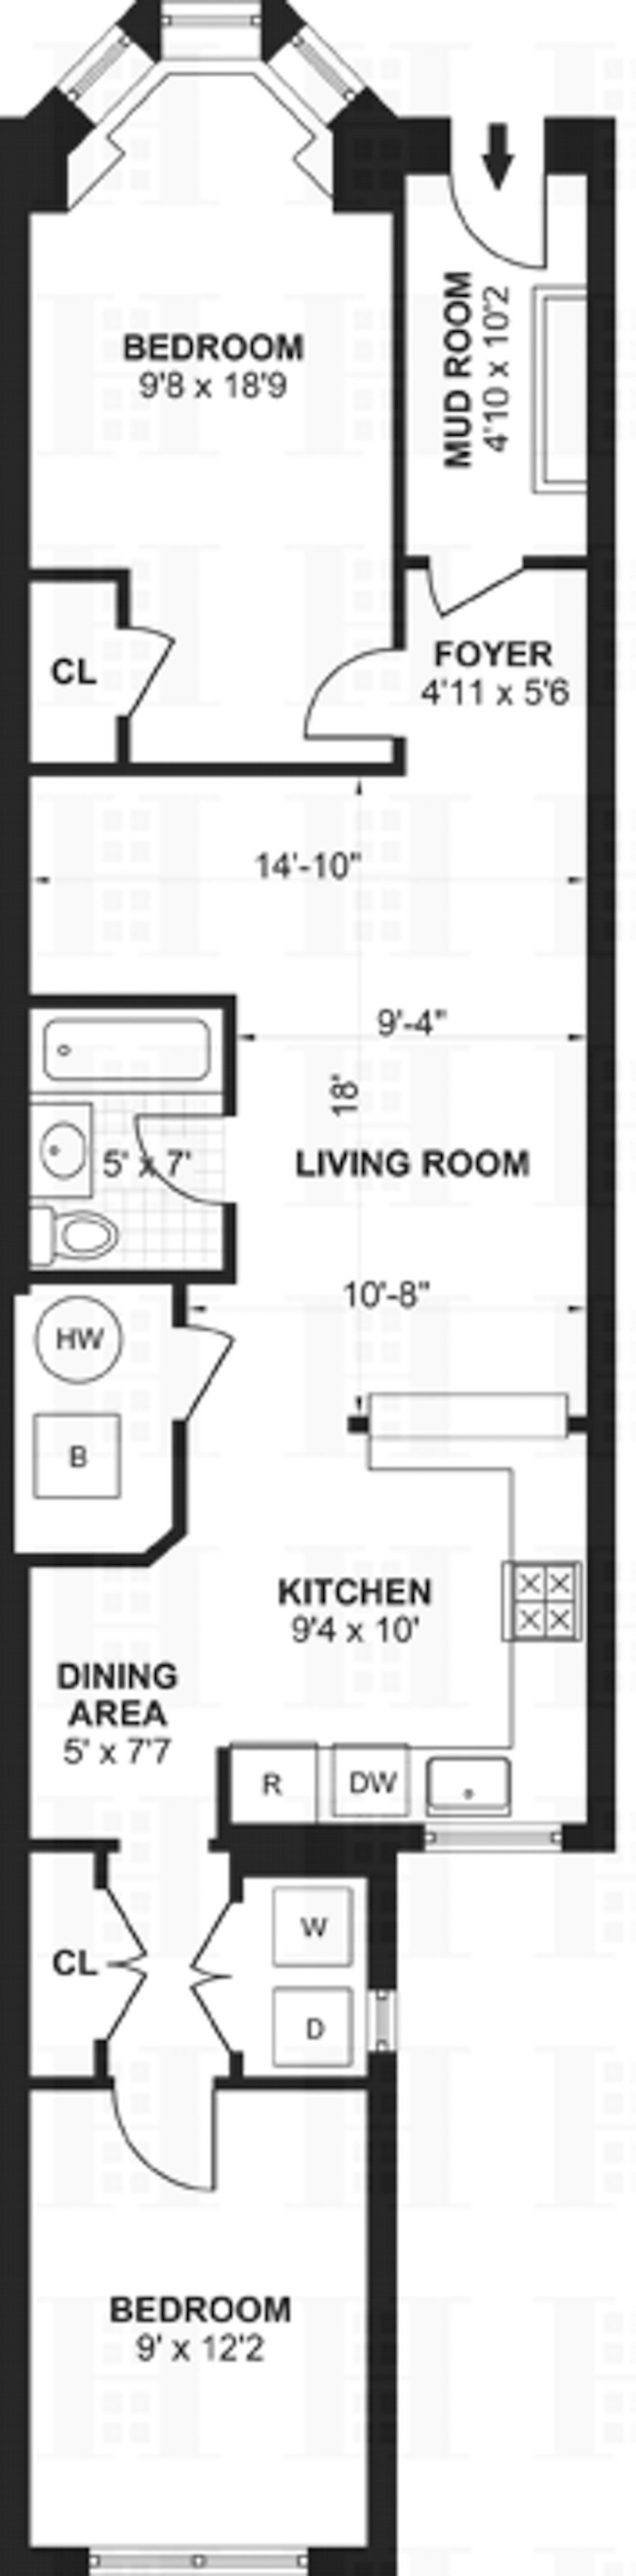 Floorplan for 585 Fourth Street, GARDEN